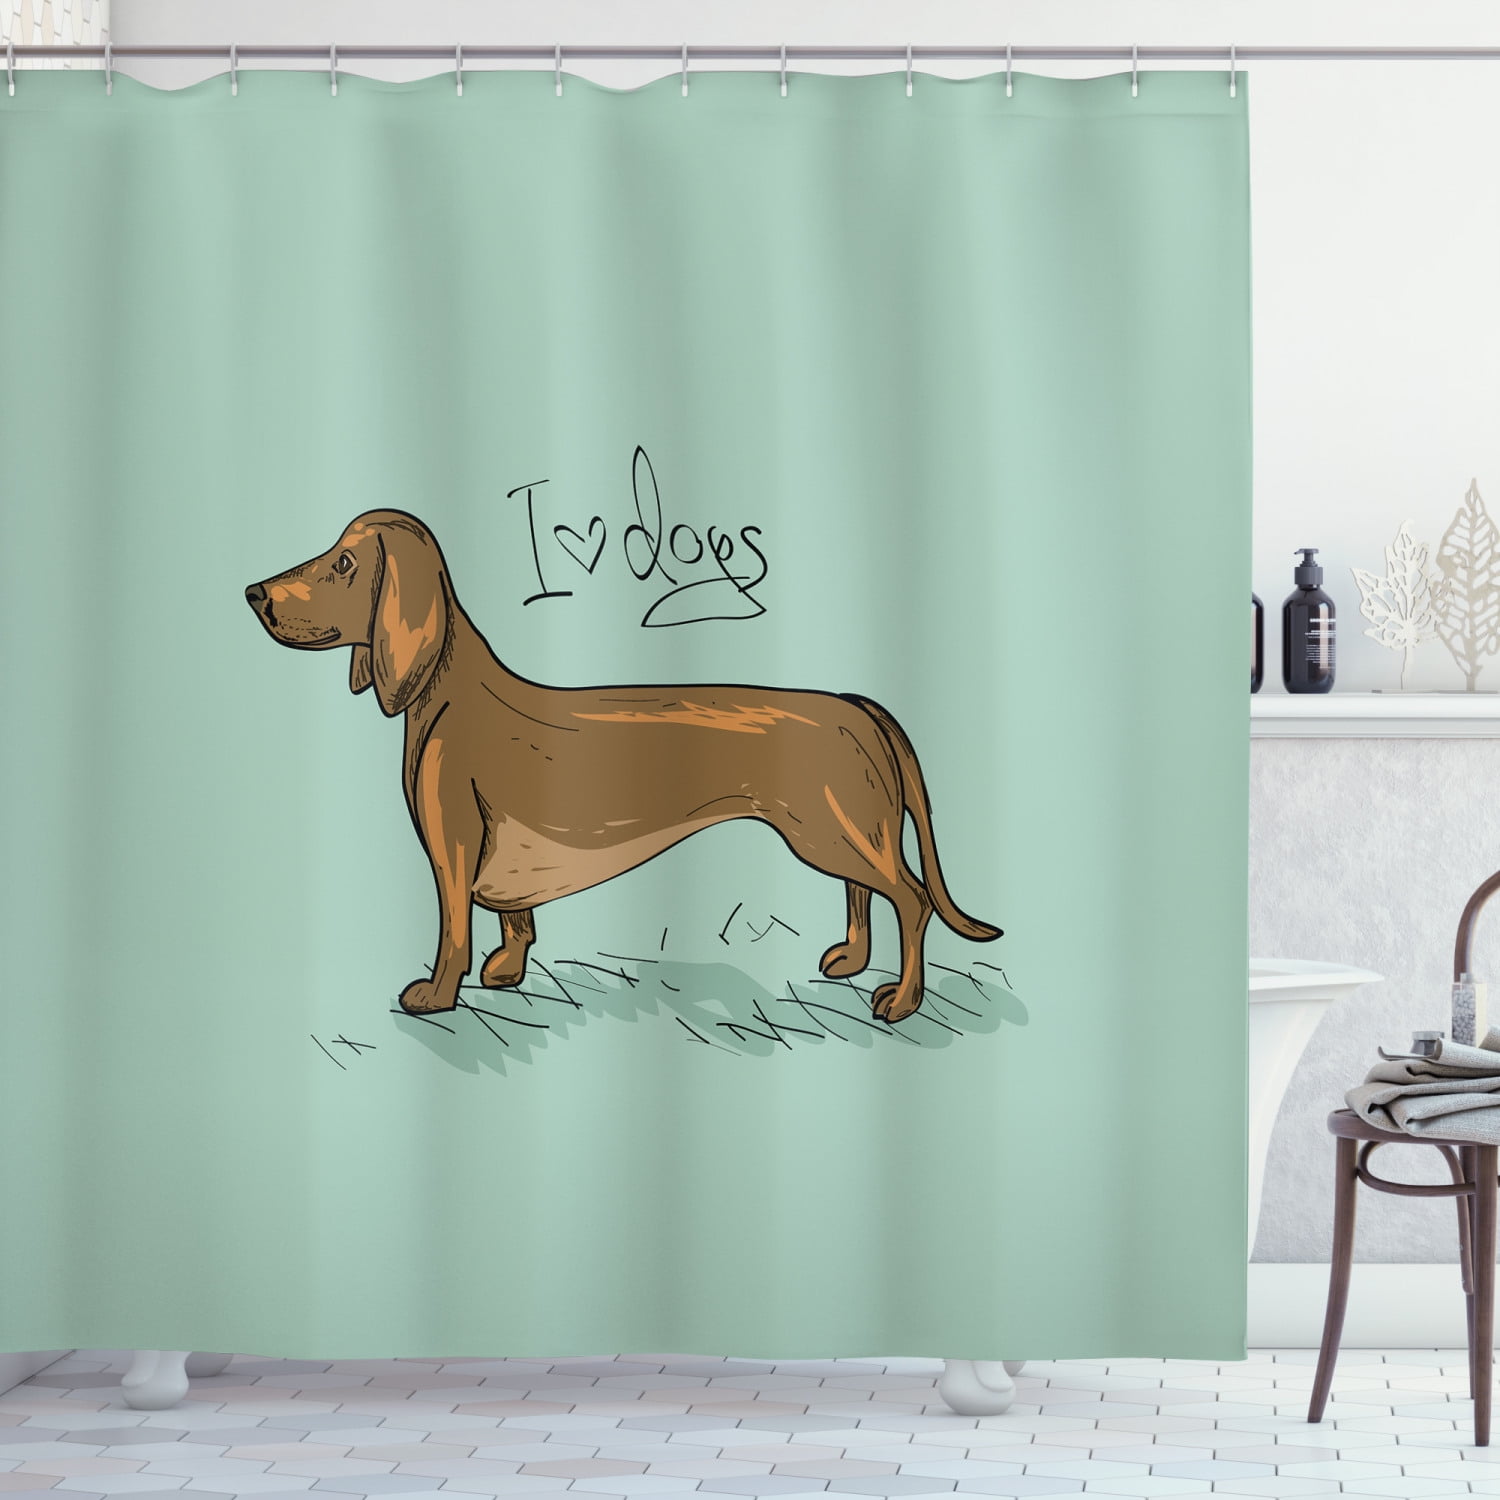 Dog Shower Curtain Animal Shower Curtain Dachshund Dog Waterproof Shower Curtain Bathroom Decor Fabric Dog Polyester